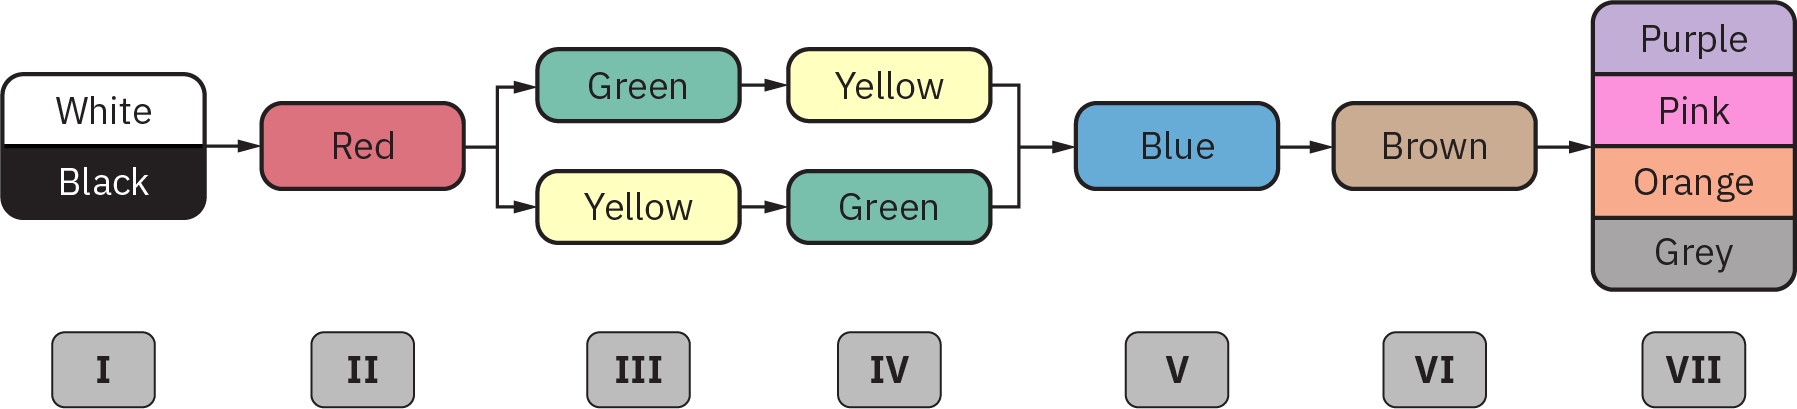 Um diagrama representando o seguinte: no Estágio 1, marcadores para “Branco” e “Preto”; no Estágio 2, um marcador para “Vermelho”; no Estágio 3, marcadores para “Verde” e “Amarelo”; no Estágio 4, marcadores para “Amarelo” e “Verde”; no Estágio 5, “Azul”; no Estágio 6, “Marrom”; e no Estágio 7, “Roxo”, “Rosa”, “Rosa” Laranja” e “Cinza”.